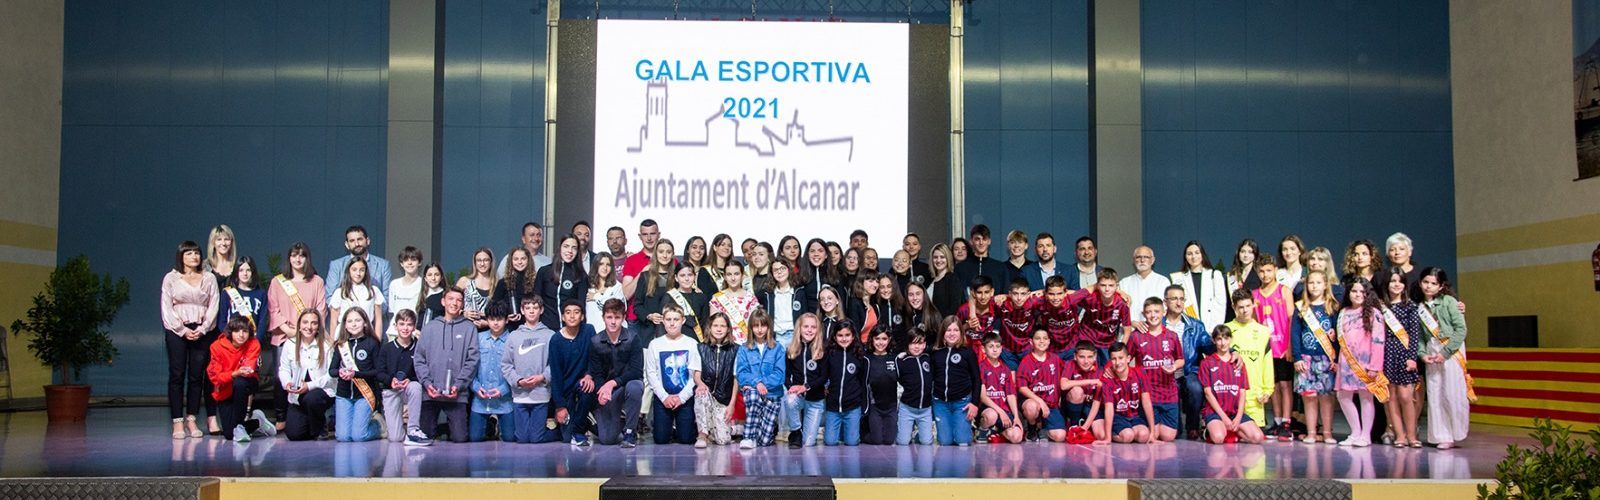 Iker Garcia rep a Alcanar el premi al millor esportista de l’any 2021 en la VIII Gala Esportiva